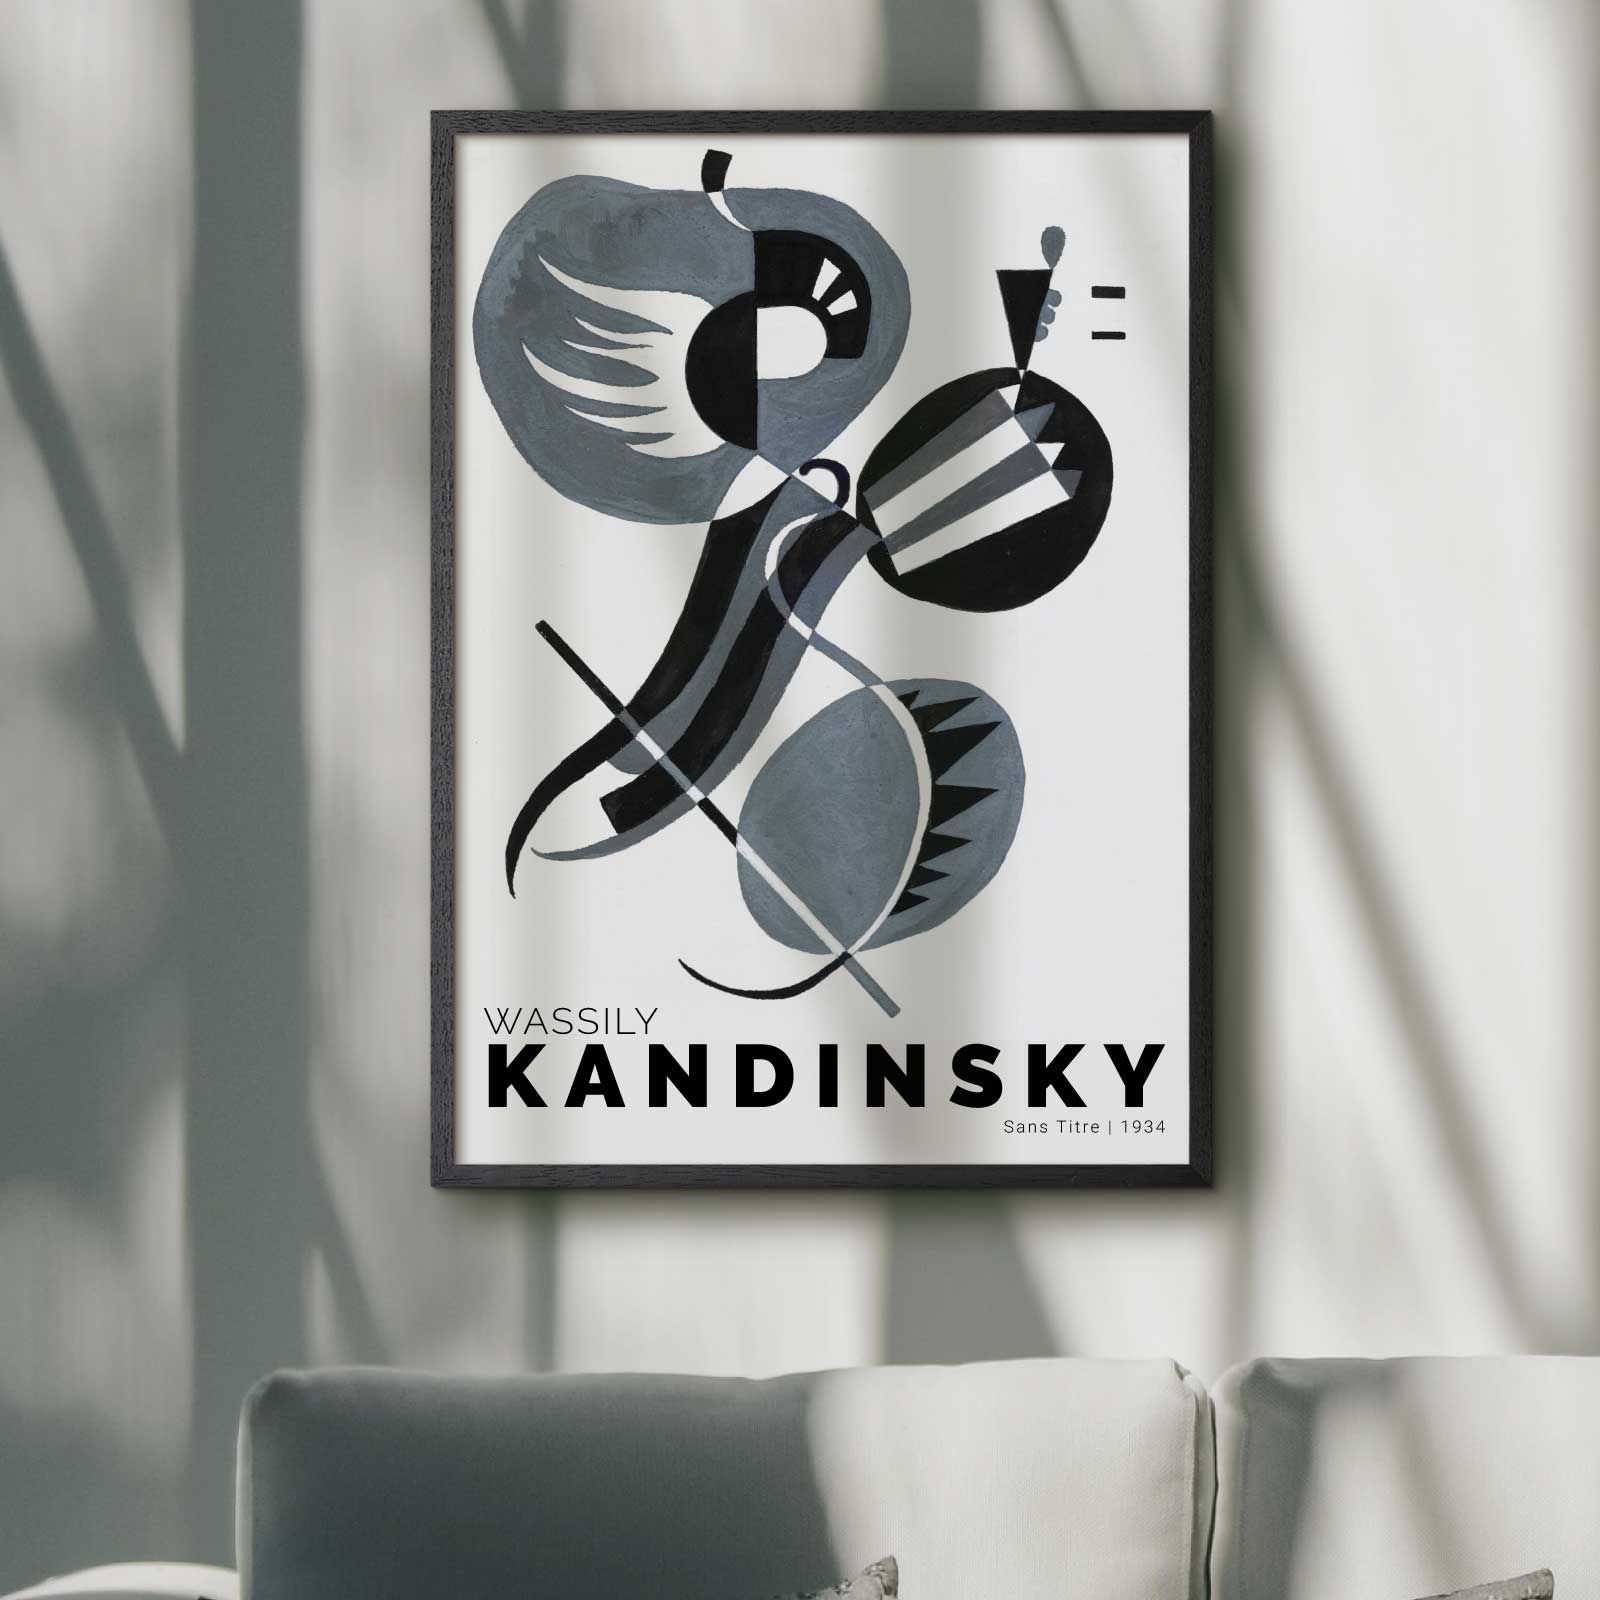 Art poster showing Wassily Kandinsky "Sans Titre"